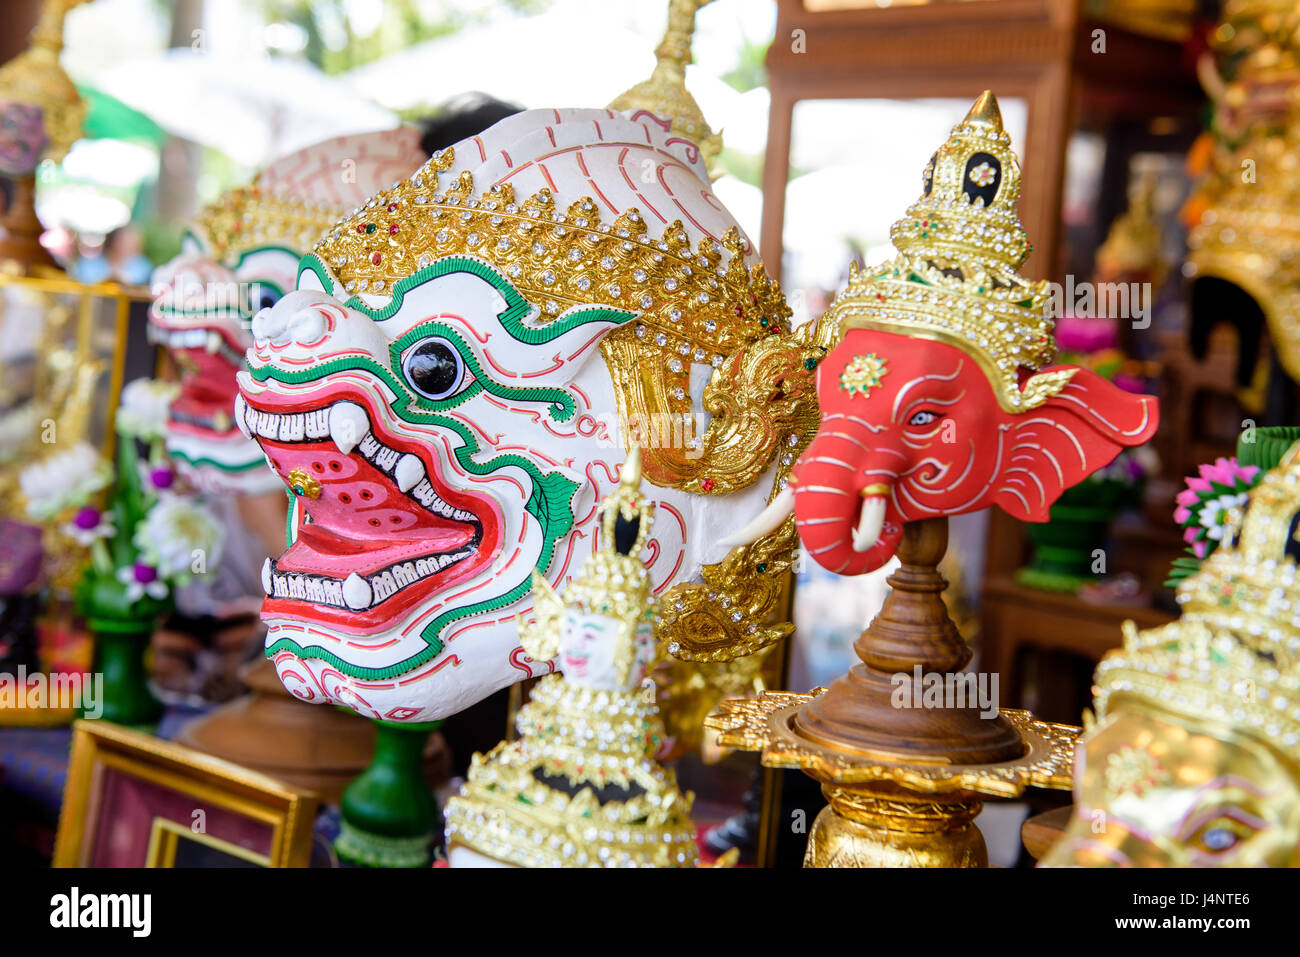 Hua ou masque Khon Khon, partie de le costume des artistes interprètes ou exécutants de la danse traditionnelle thaïlandaise. Banque D'Images